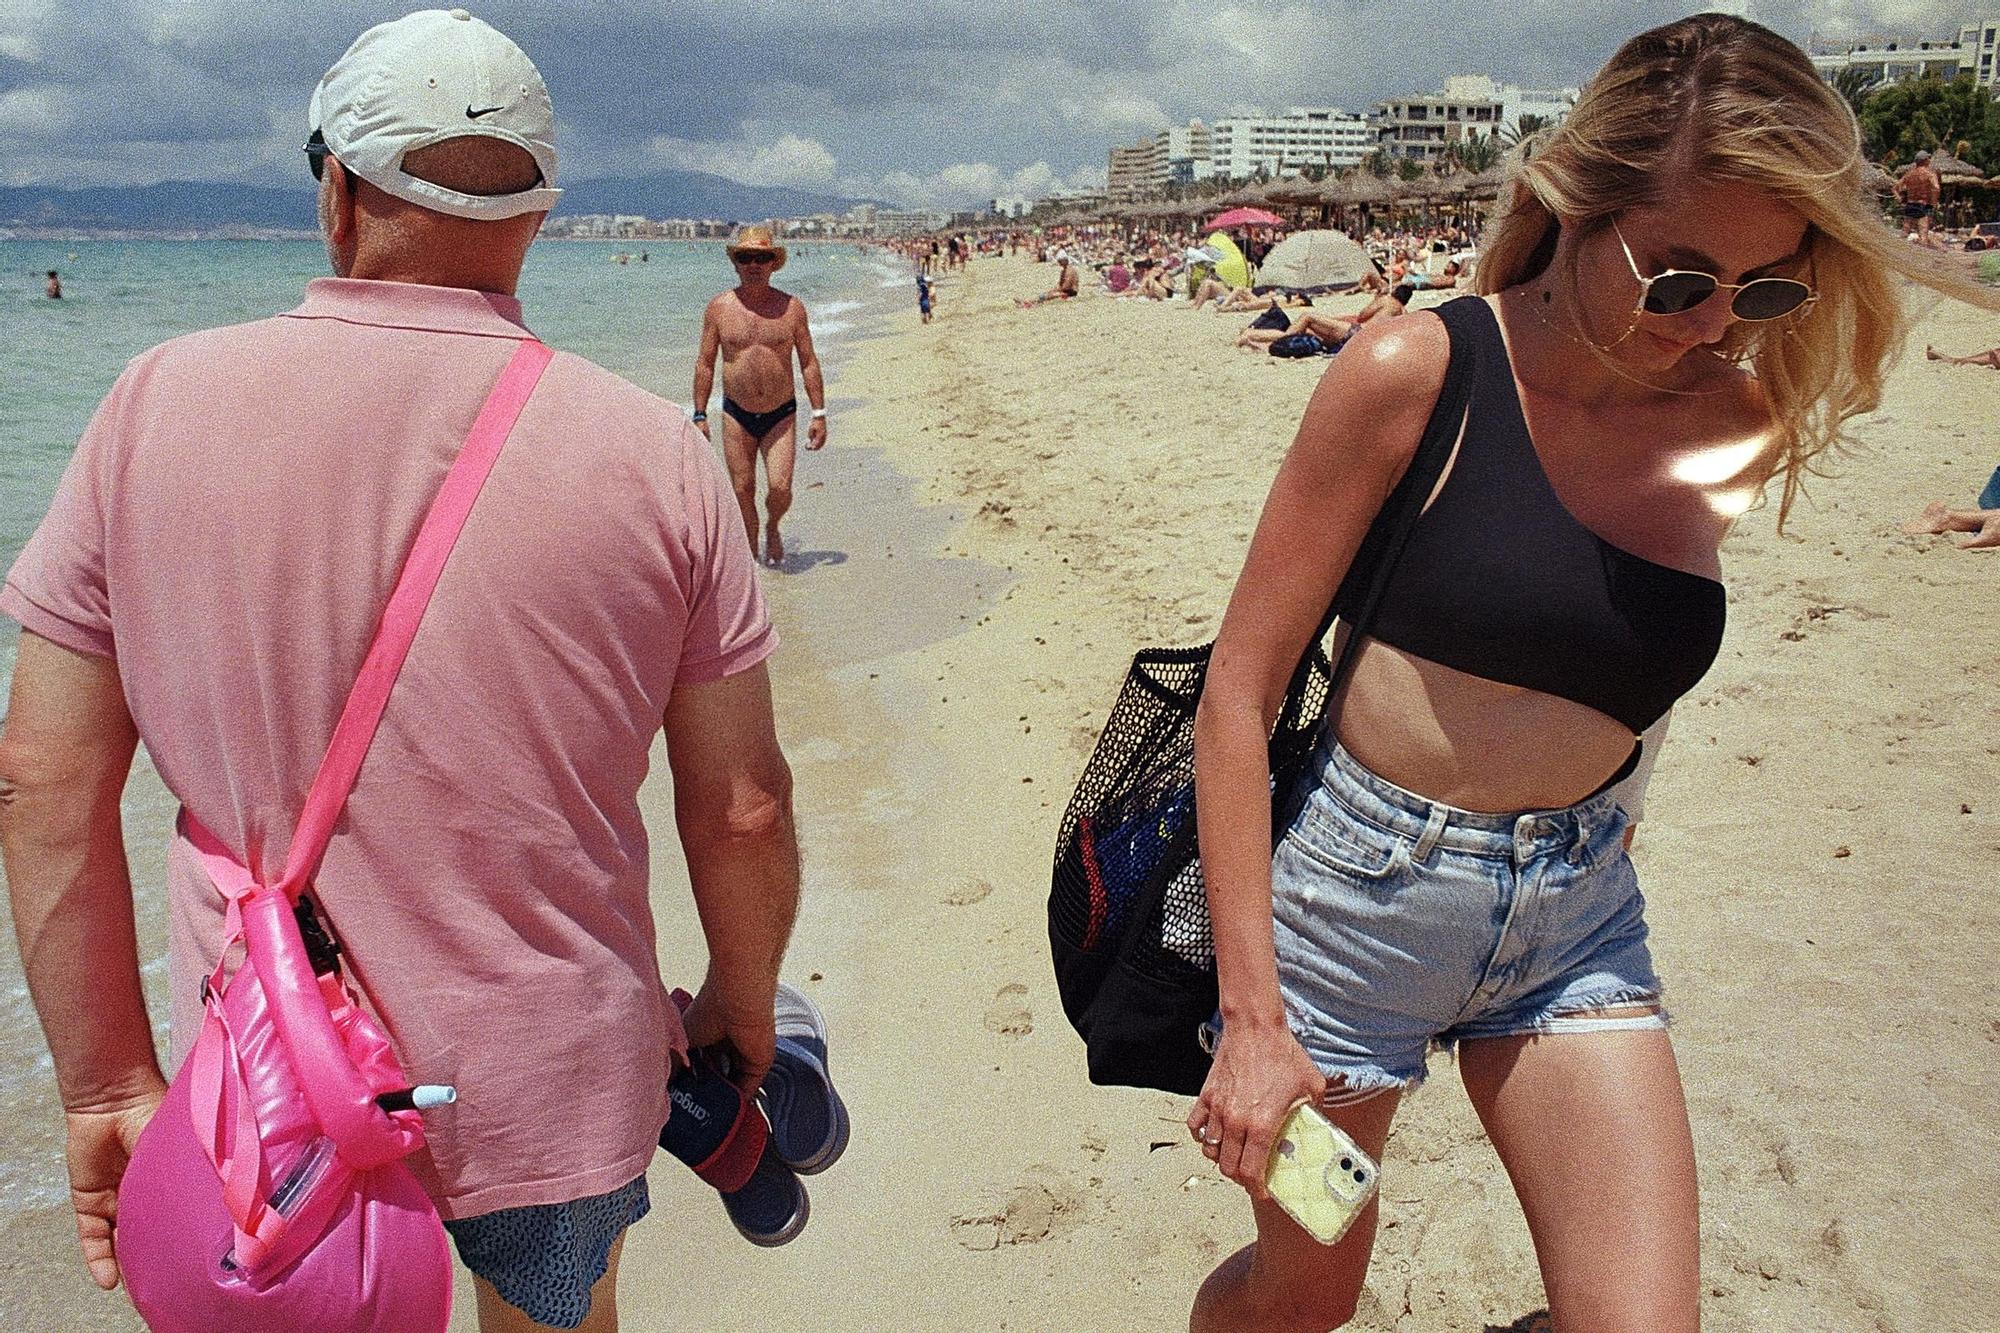 "Weine nicht, wenn der Pegel fällt": Bilder eines deutschen Straßenfotografen von der Playa de Palma auf Mallorca